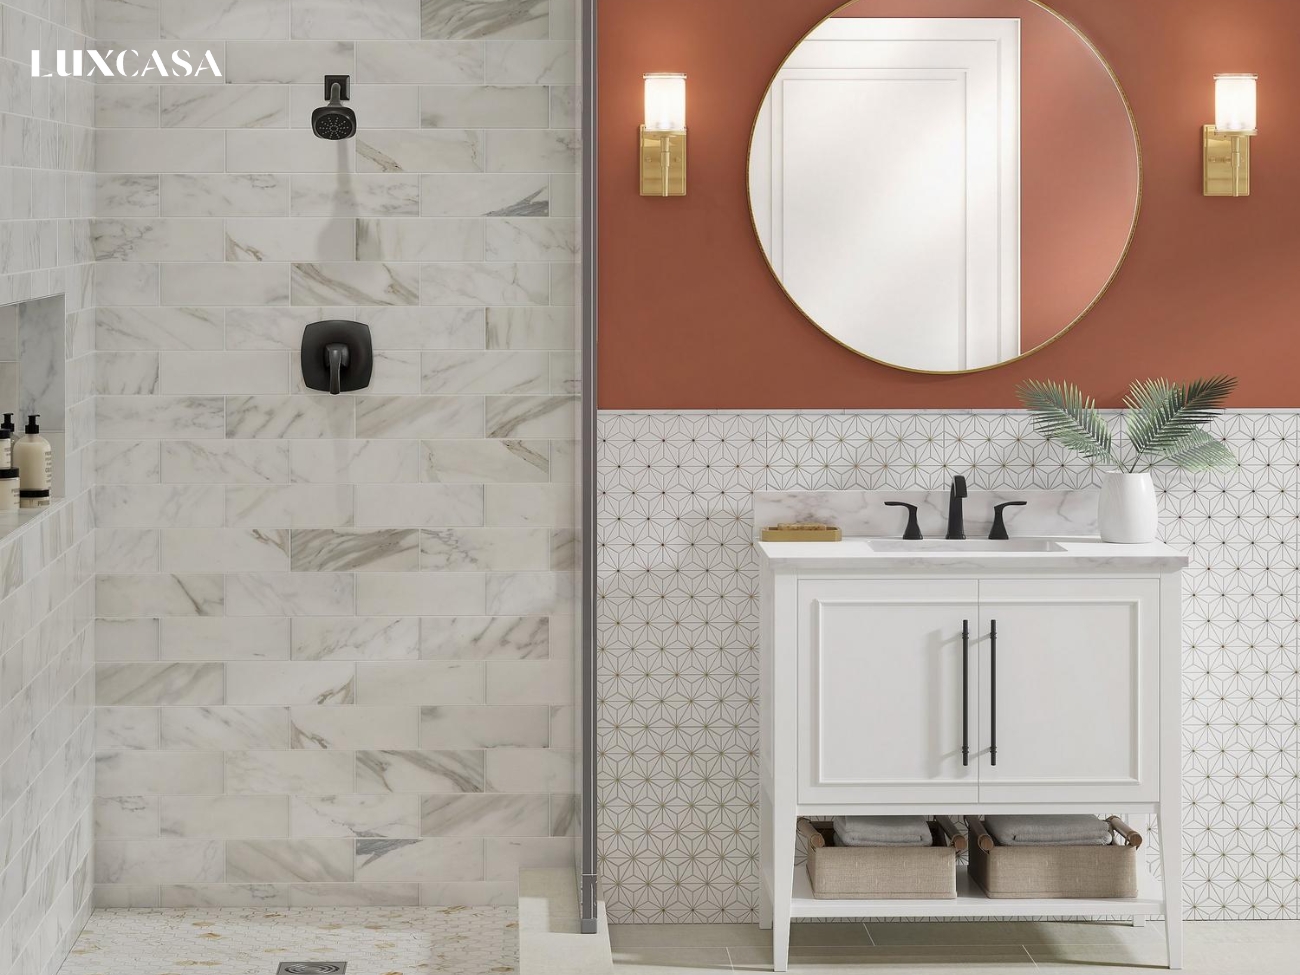 Nhà vệ sinh năng động trẻ trung với việc match nhiều chất liệu như đá tự nhiên, gạch mosaic, sơn tường tông màu nổi bật